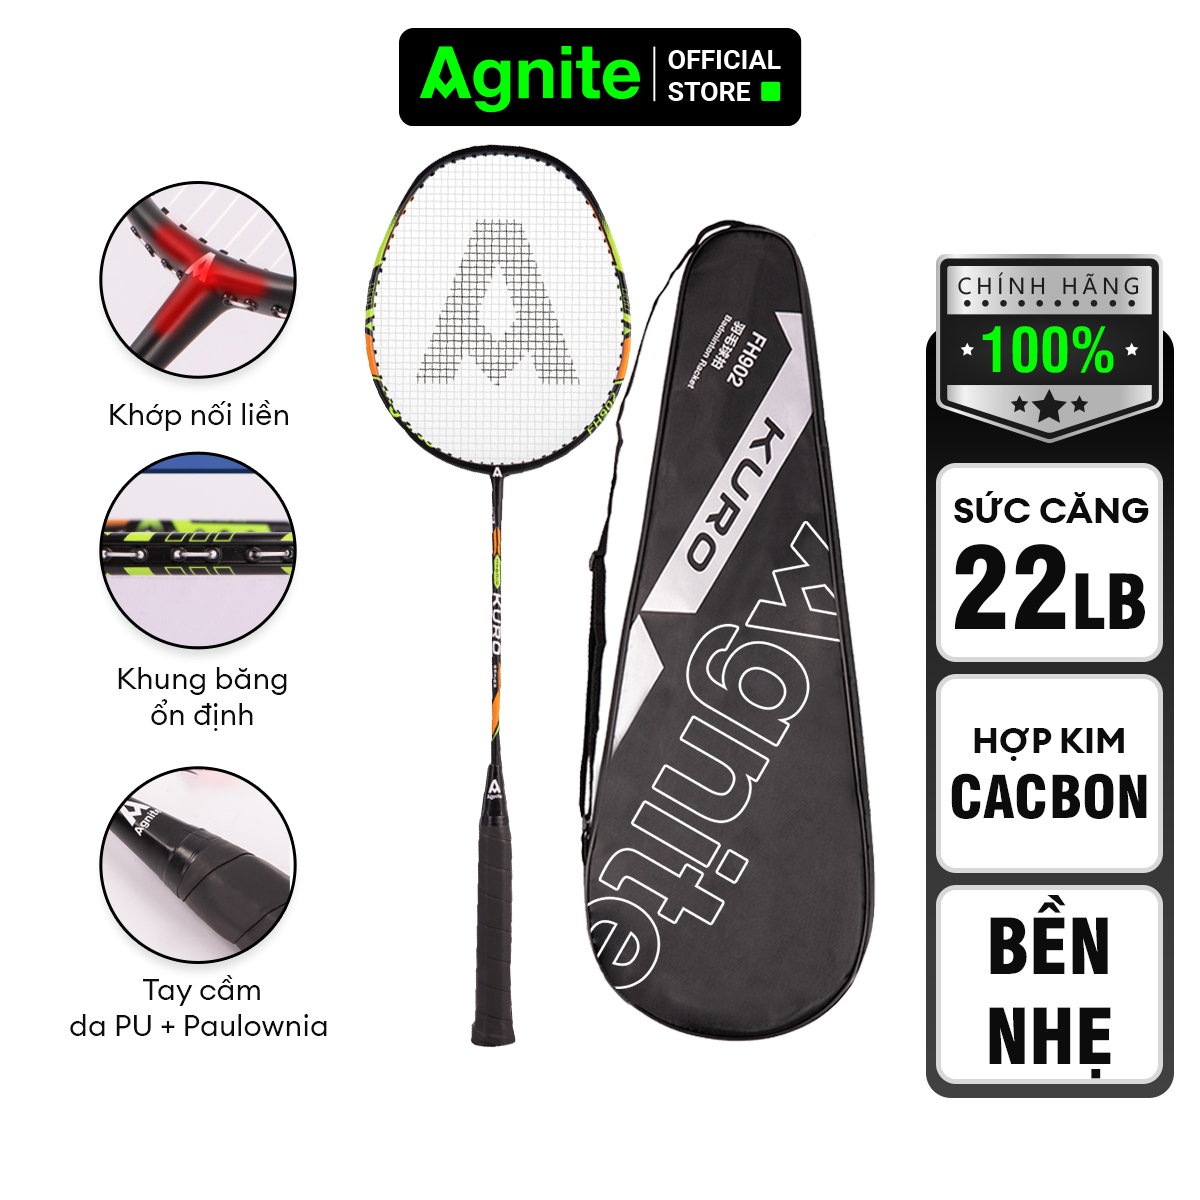 1 chiếc vợt đơn thiết kế mới, bền, đẹp, siêu nhẹ chính hãng Agnite tặng kèm túi đựng cầu - FH902